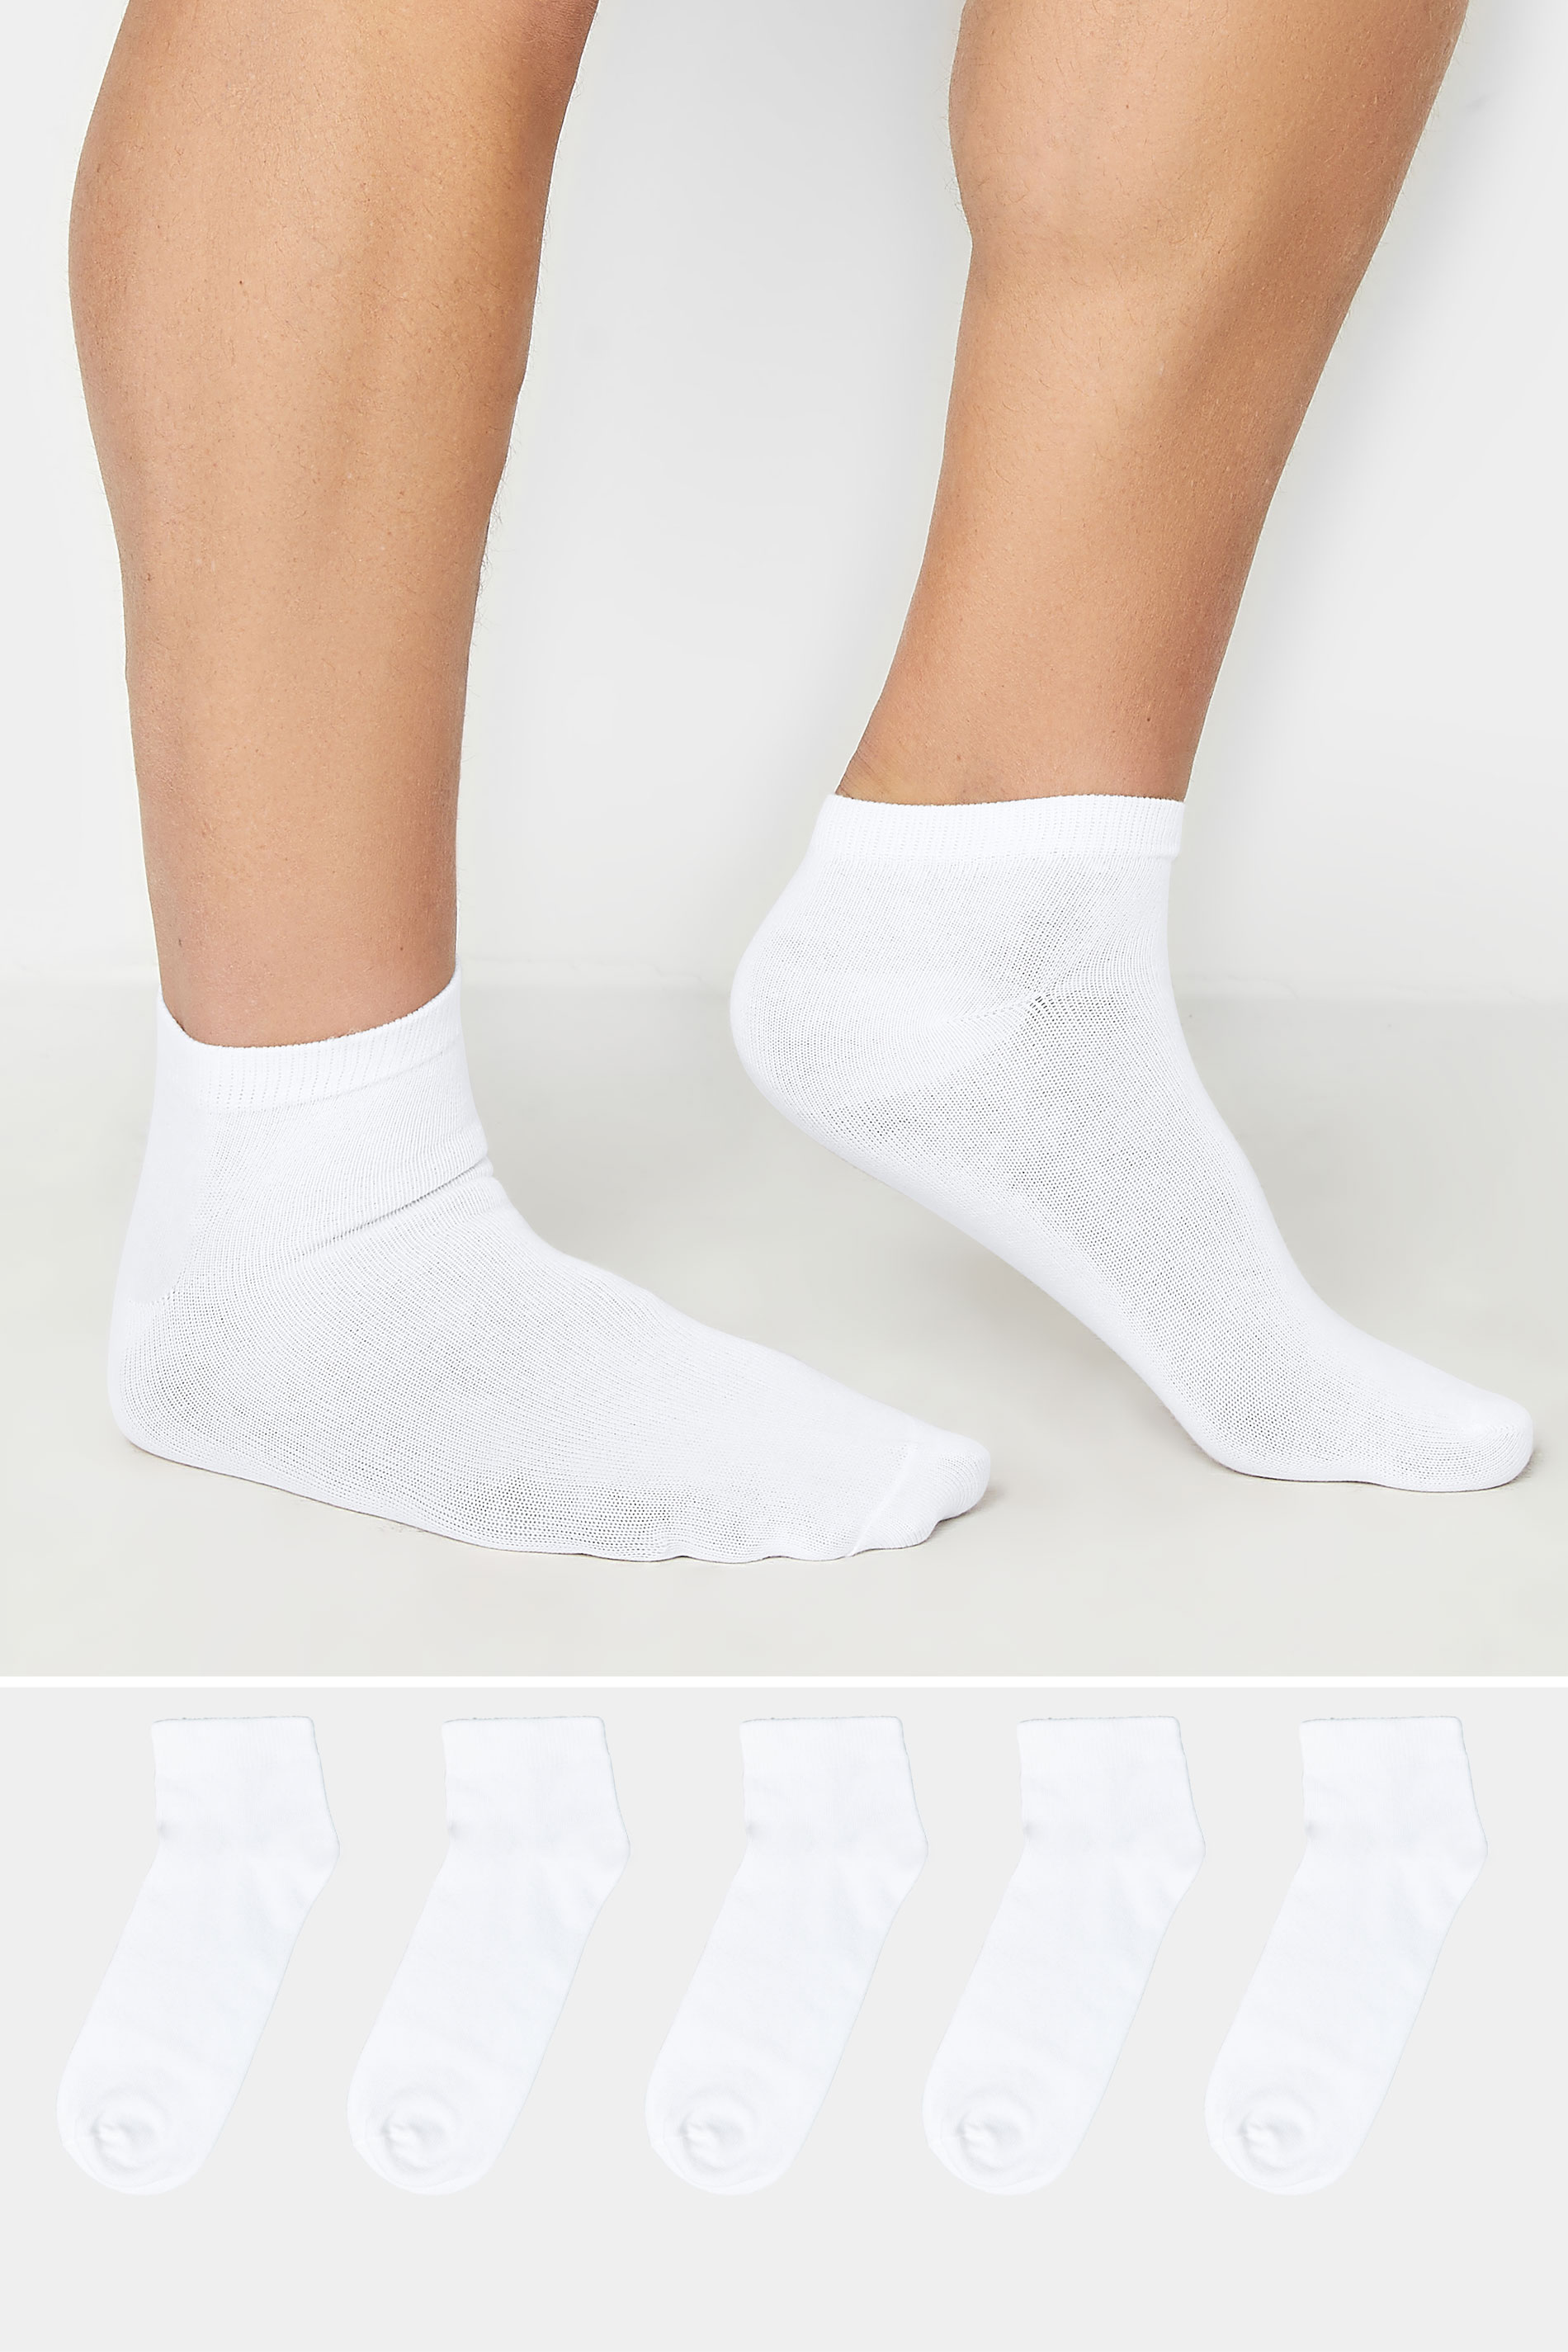 BadRhino White 5 Pack Trainer Socks | BadRhino 1